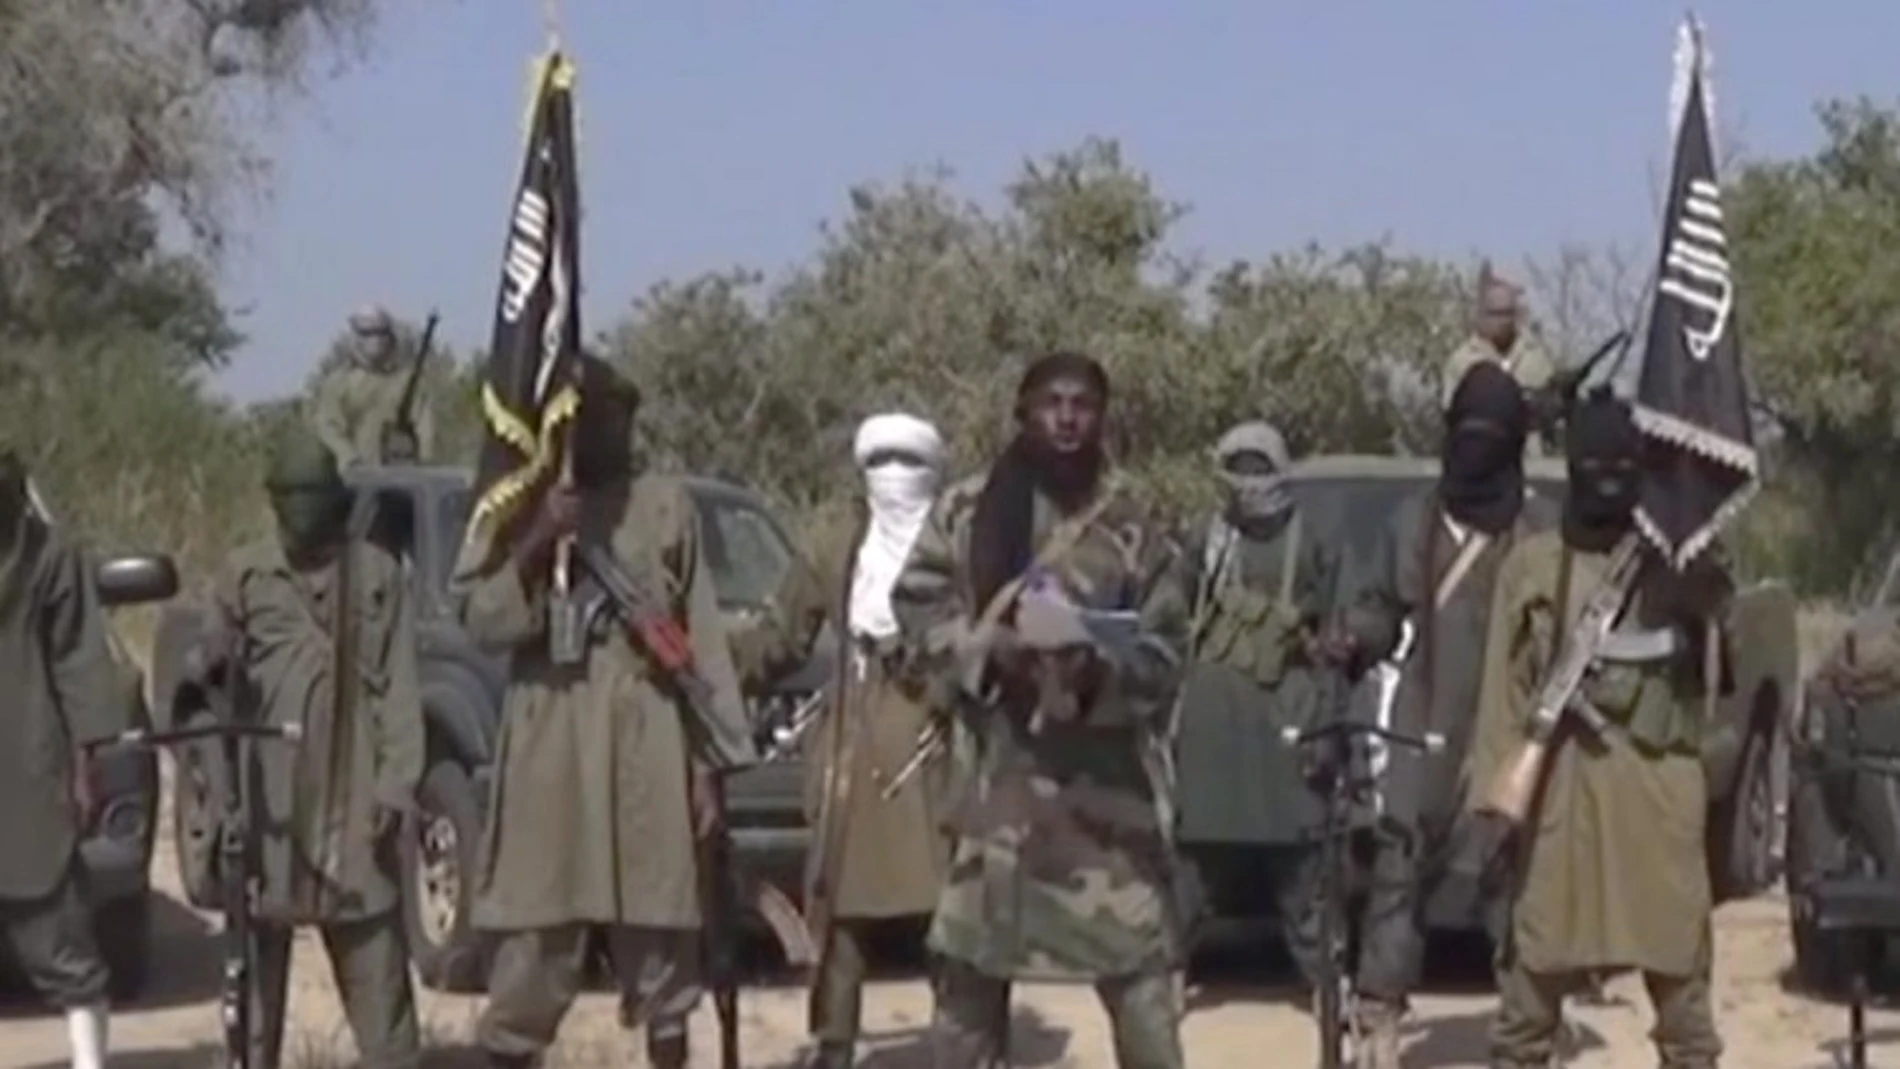 Terrositas de Boko Haram, en una imagen de archivo / Ap